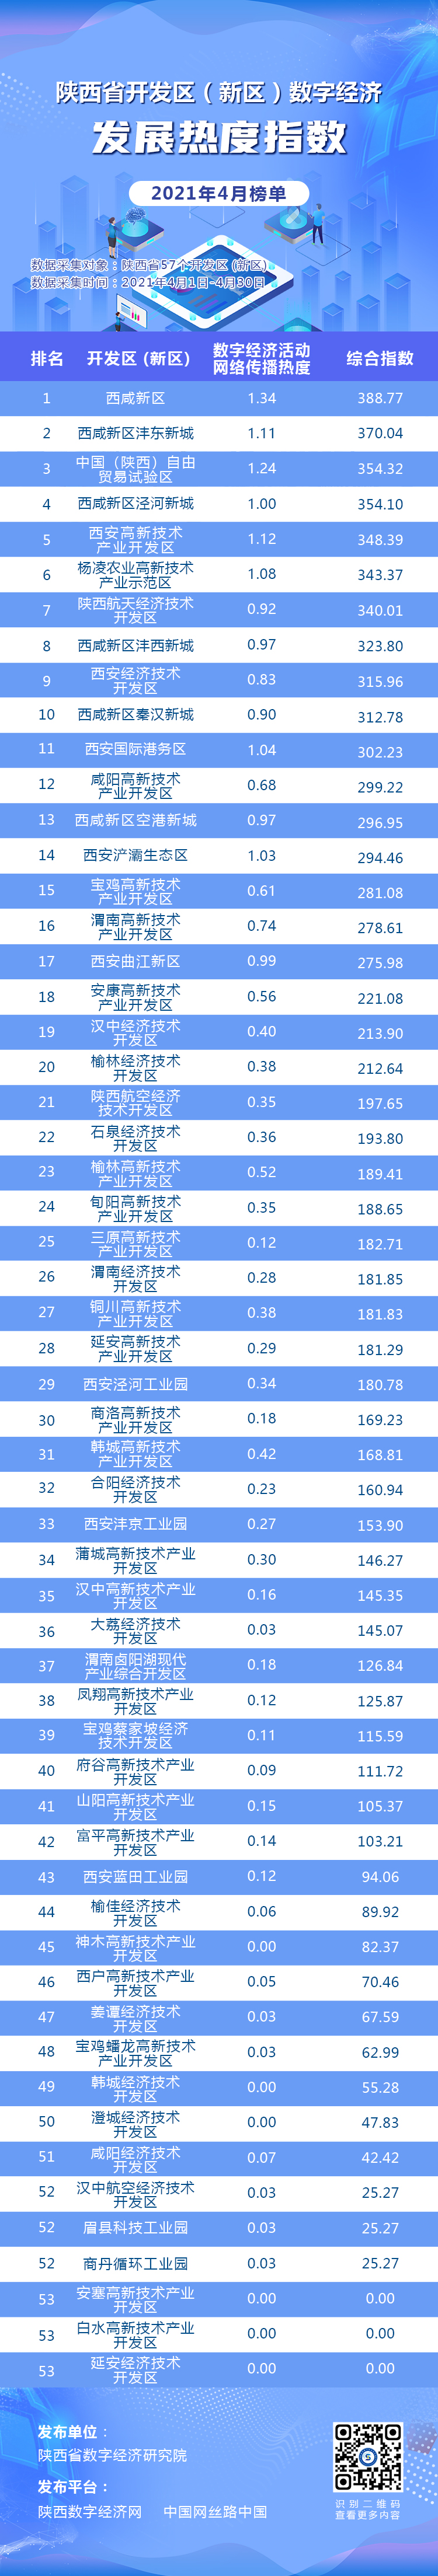 持续升温 陕西省开发区(新区)数字经济发展热度指数4月榜出炉